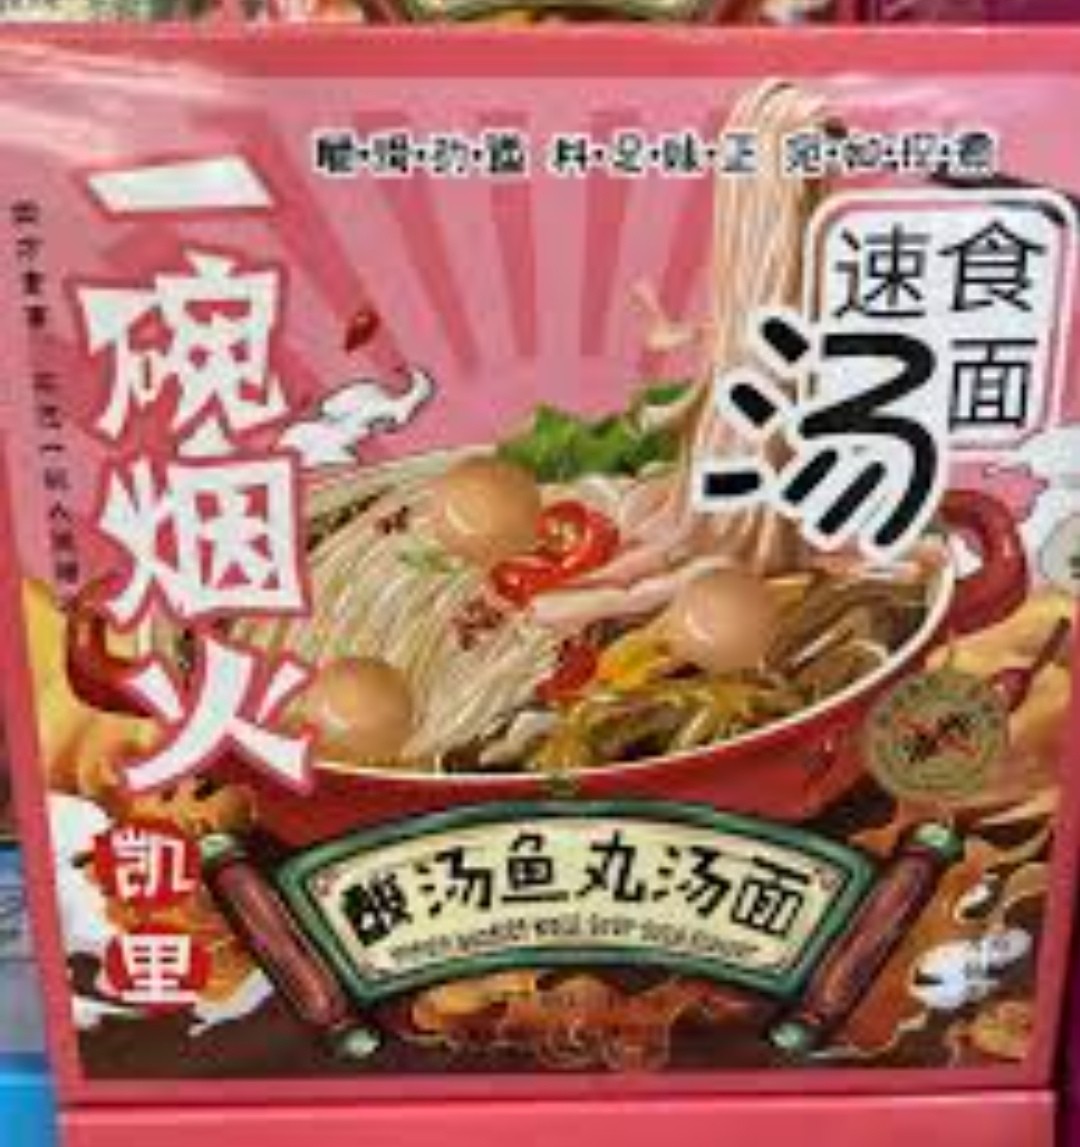 instant-noodle-kaili-sour-soup-flavor